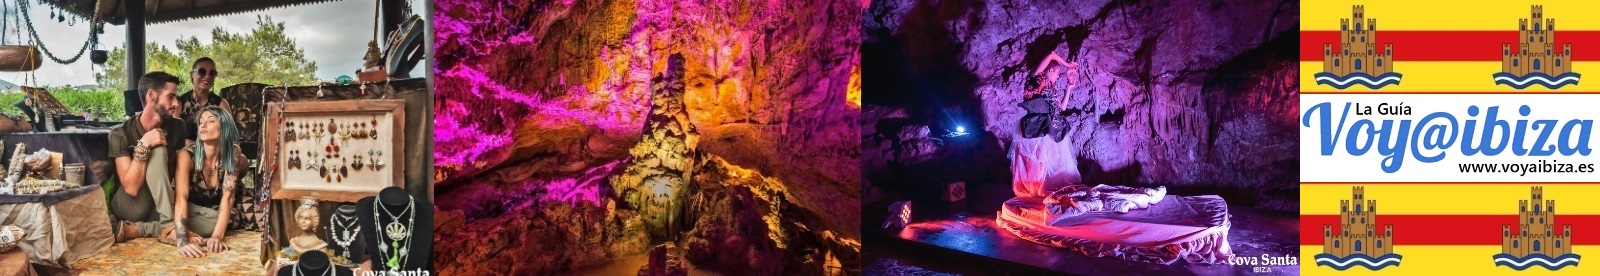 Cuevas de Ibiza, Coves d'Eivissa